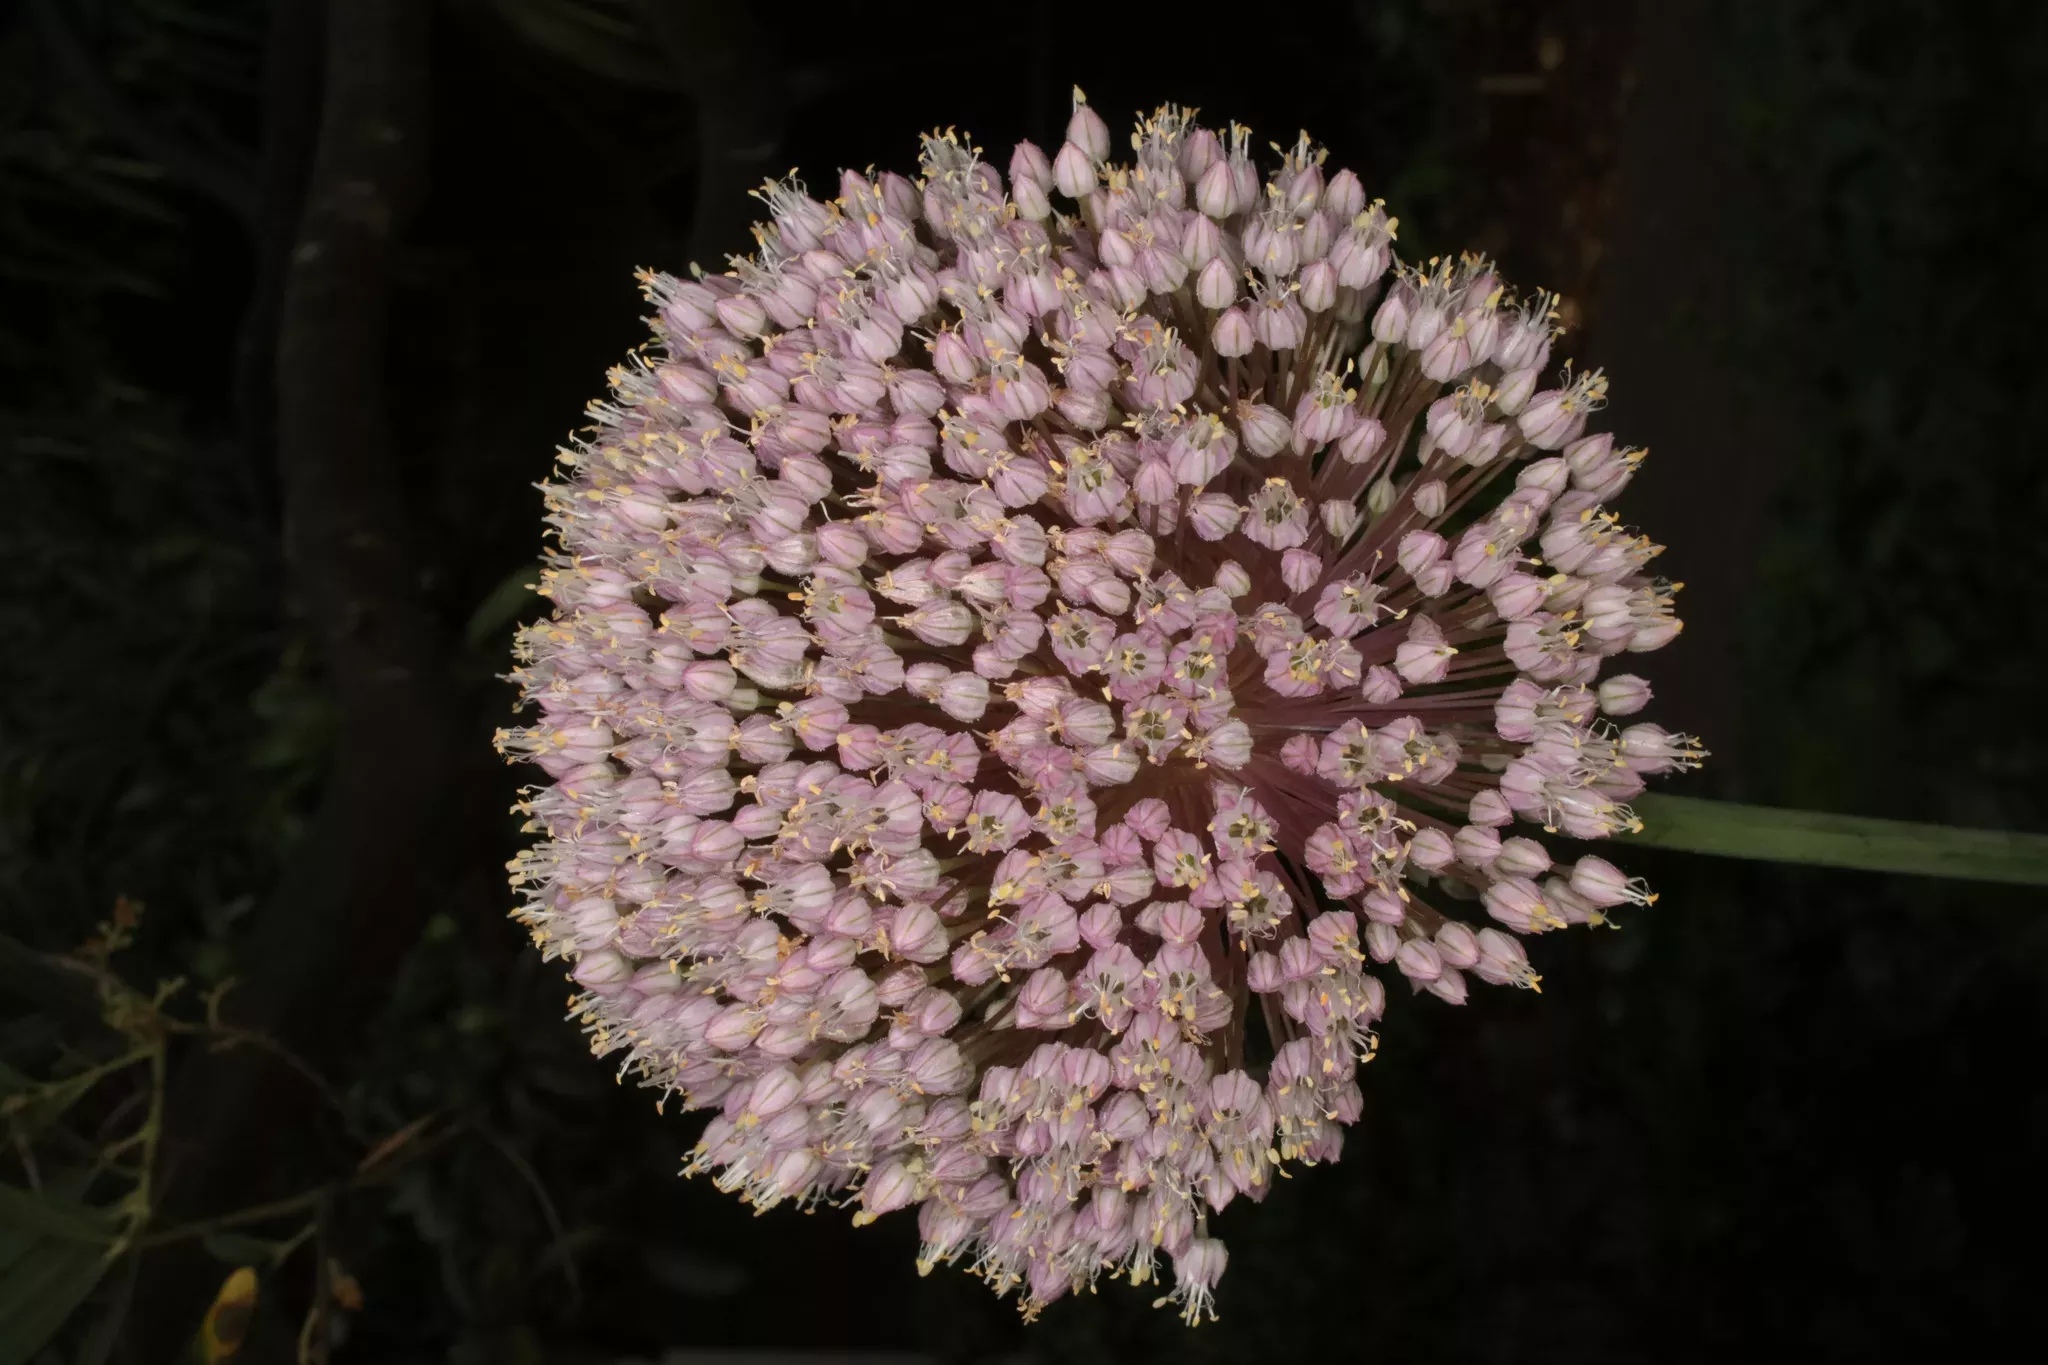  Allium Ampeloprasum